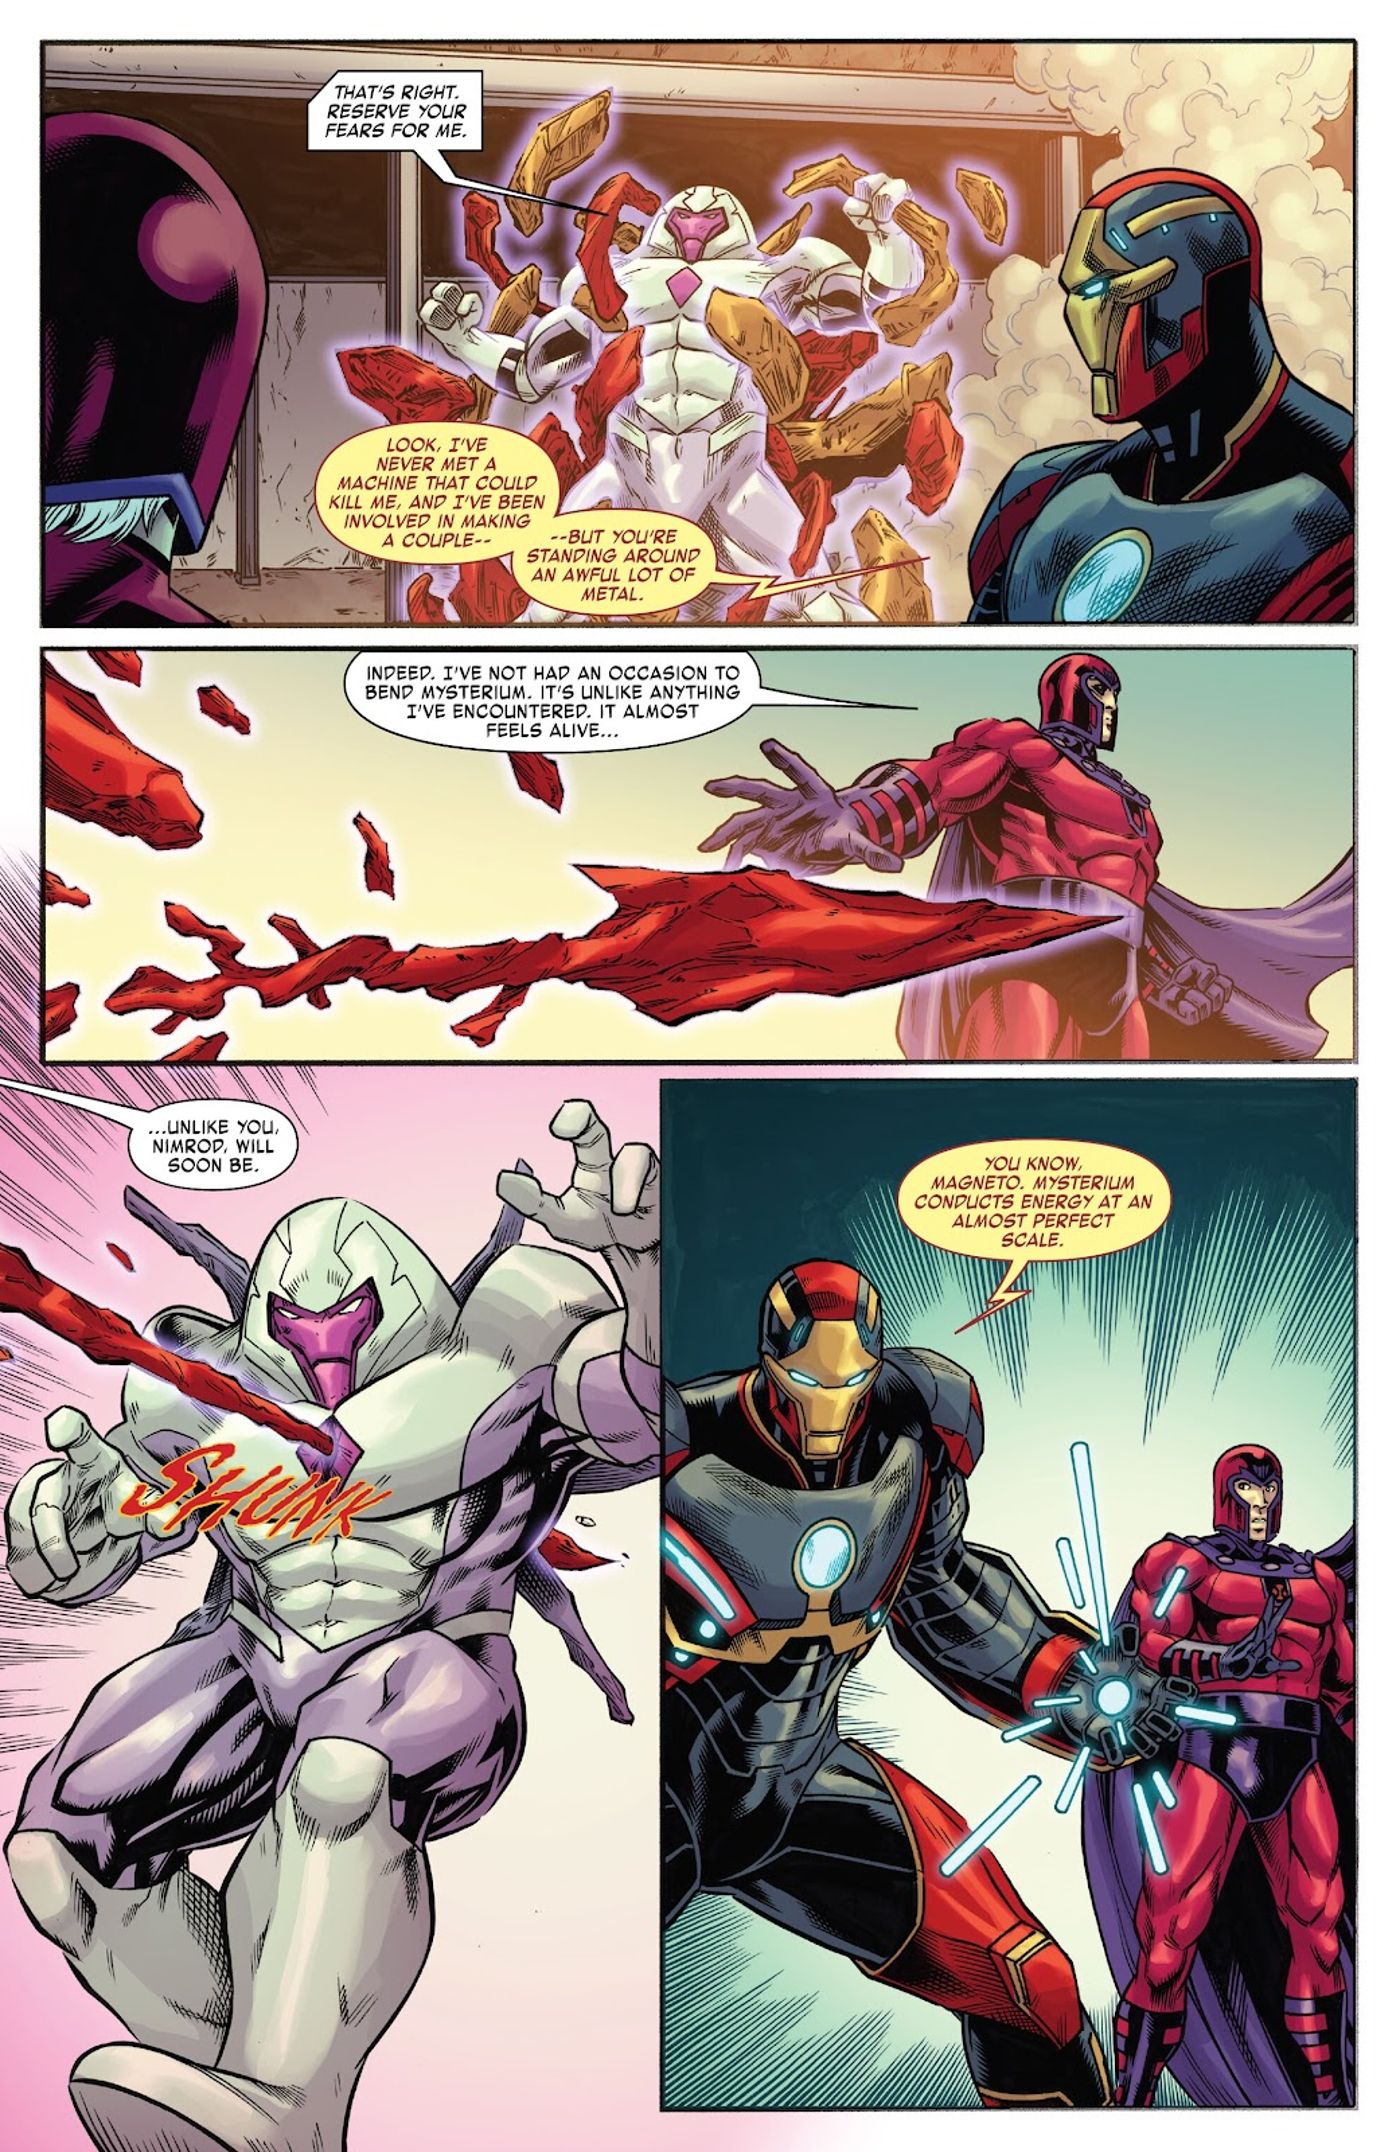 Nimrod está cercado por Mysterium.  Magneto forma uma lança Mysterium e o Homem de Ferro explica suas propriedades energéticas. 